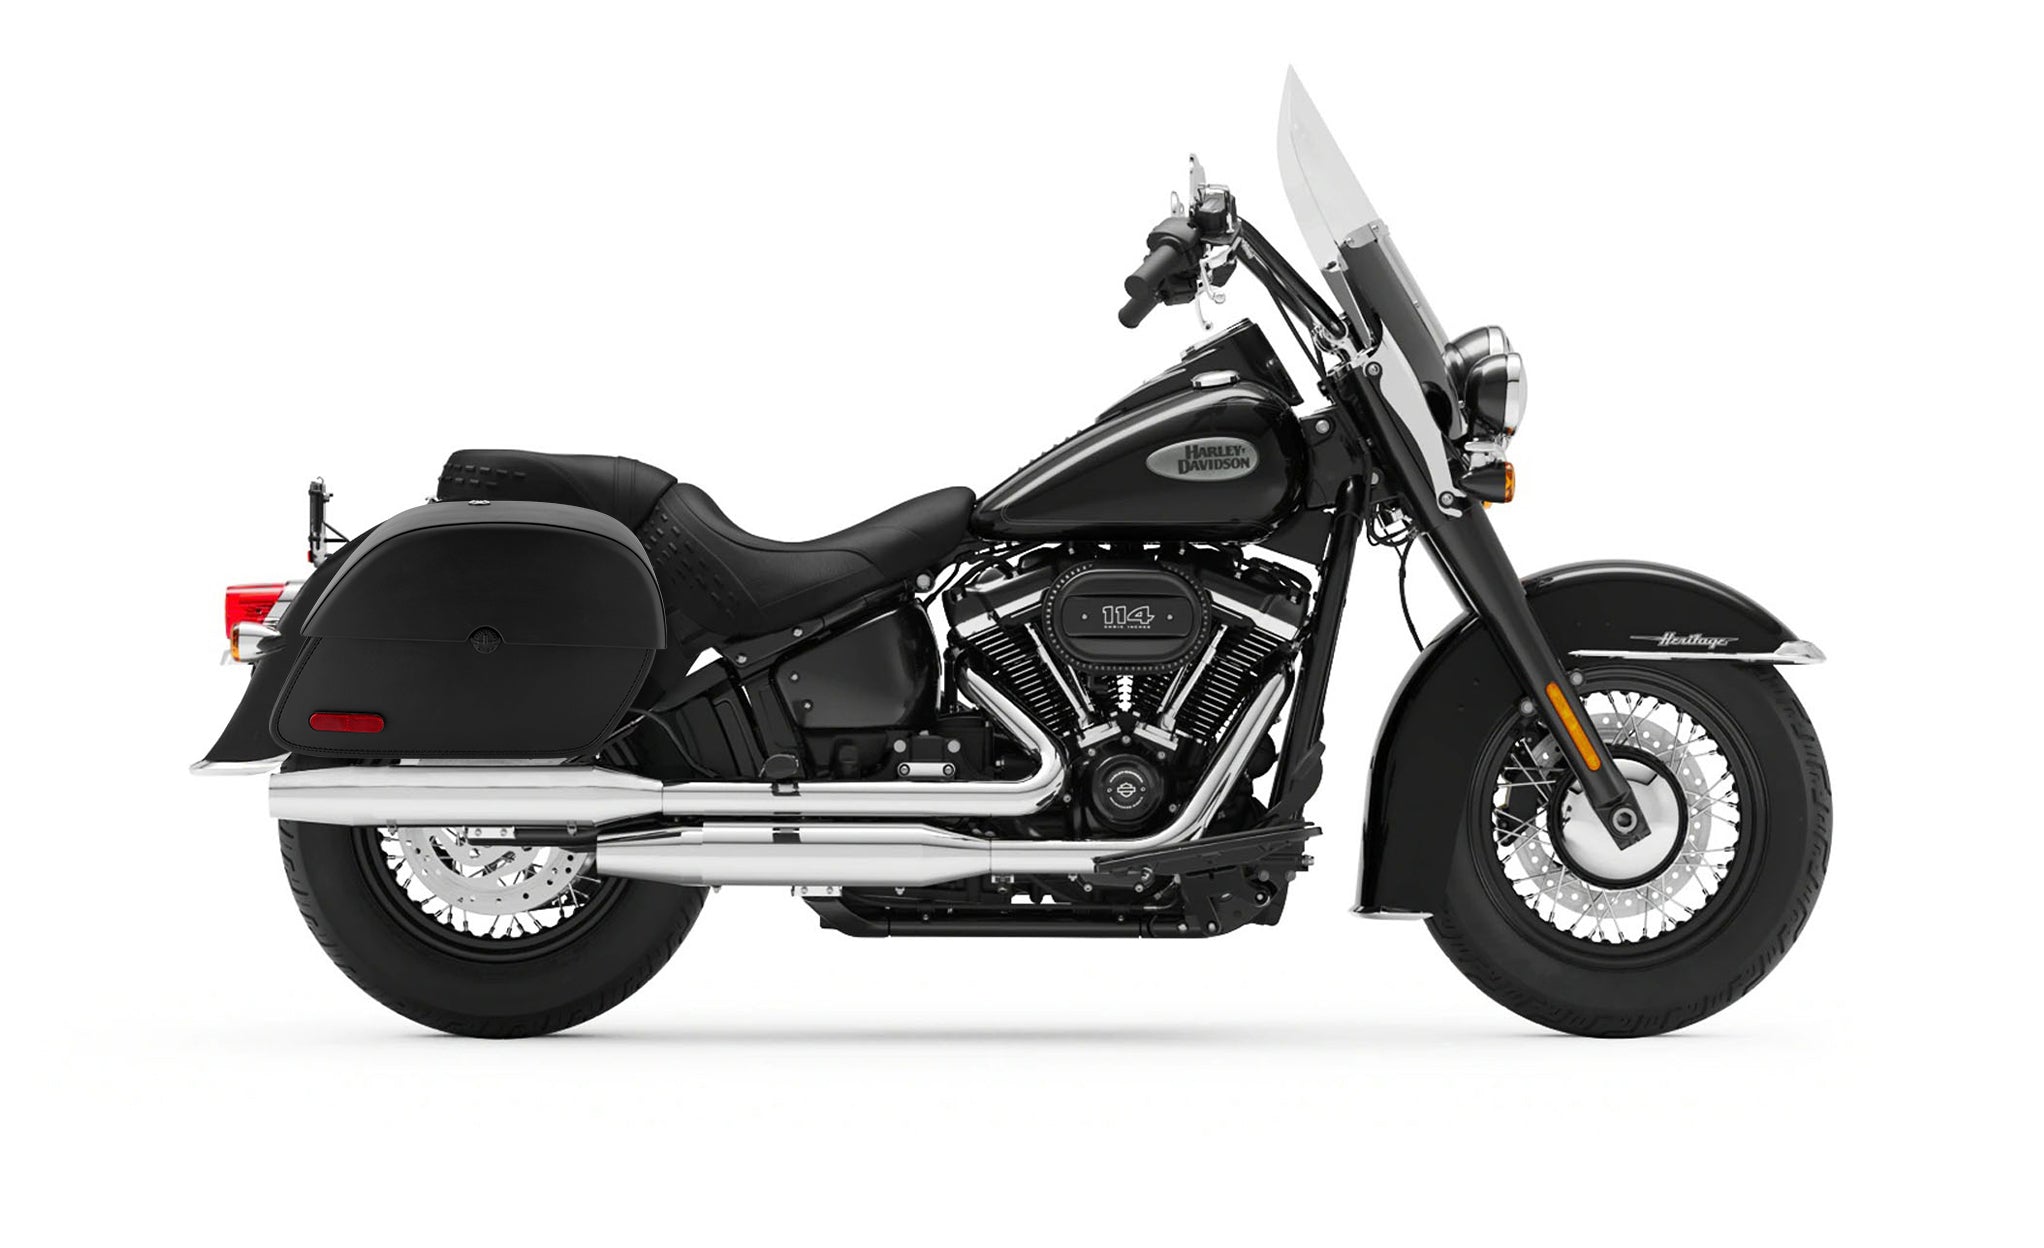 Viking Panzer Large Leather Motorcycle Saddlebags For Harley Davidson Softail Heritage Flst I C Ci on Bike Photo @expand